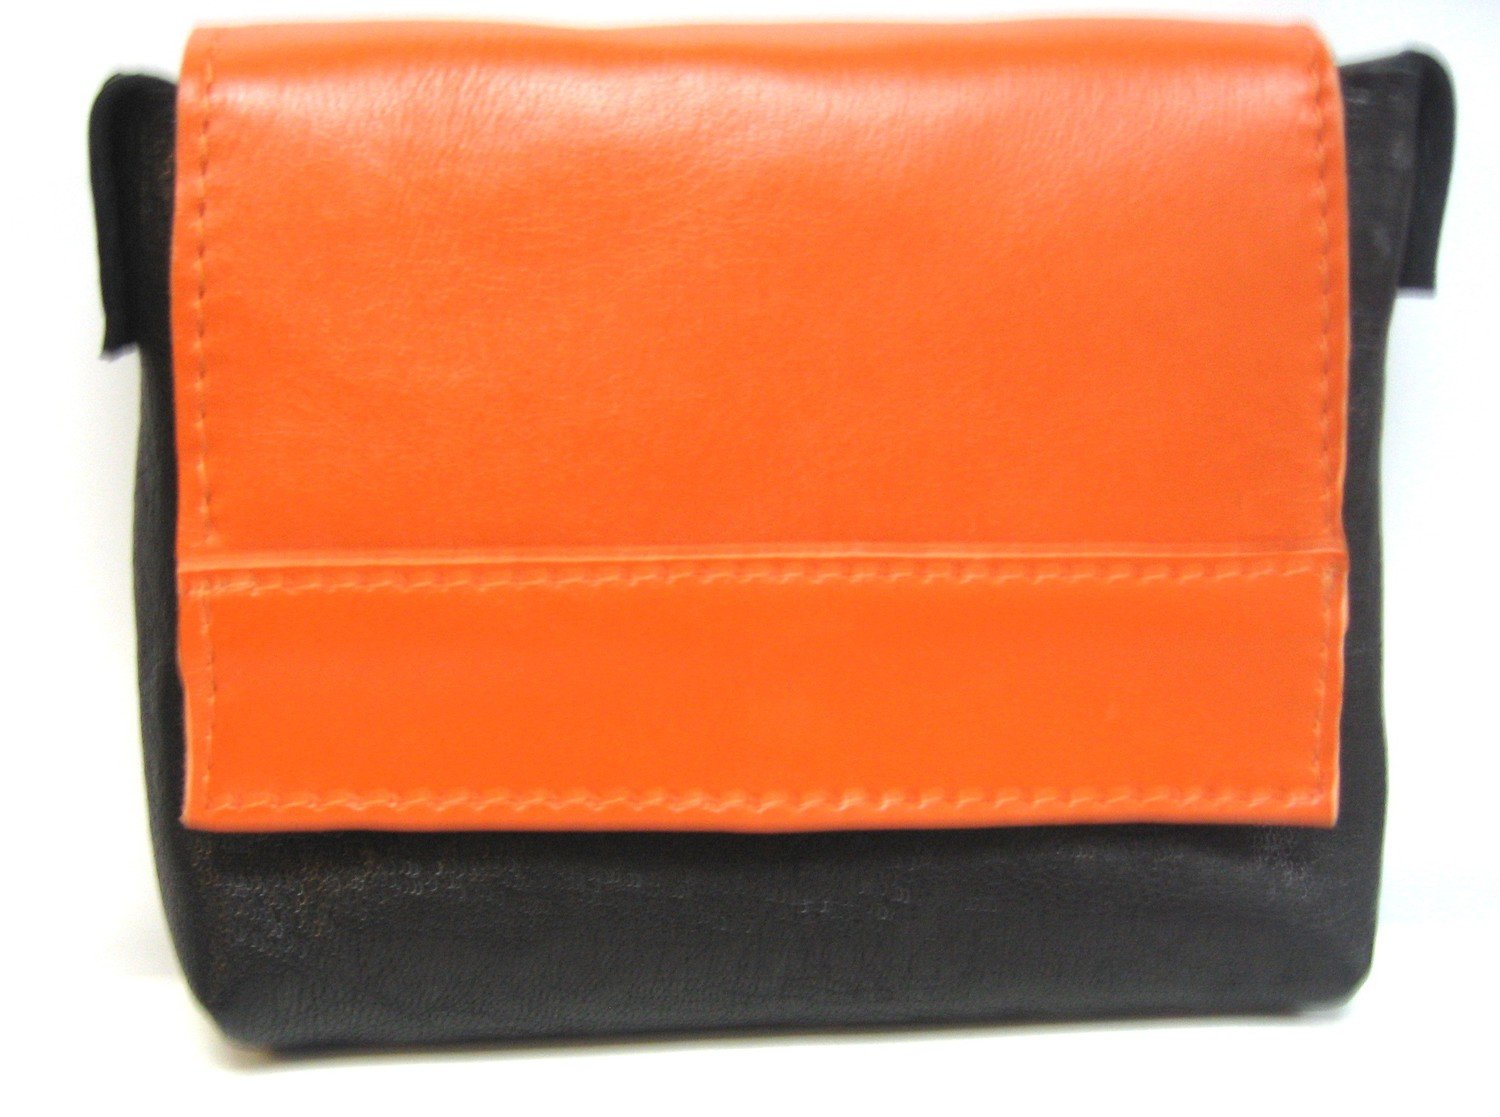 Bahamas pochette ceinture cuir Français idéal voyage protection de vos papiers fait à Toulouse couleur Noir / orange